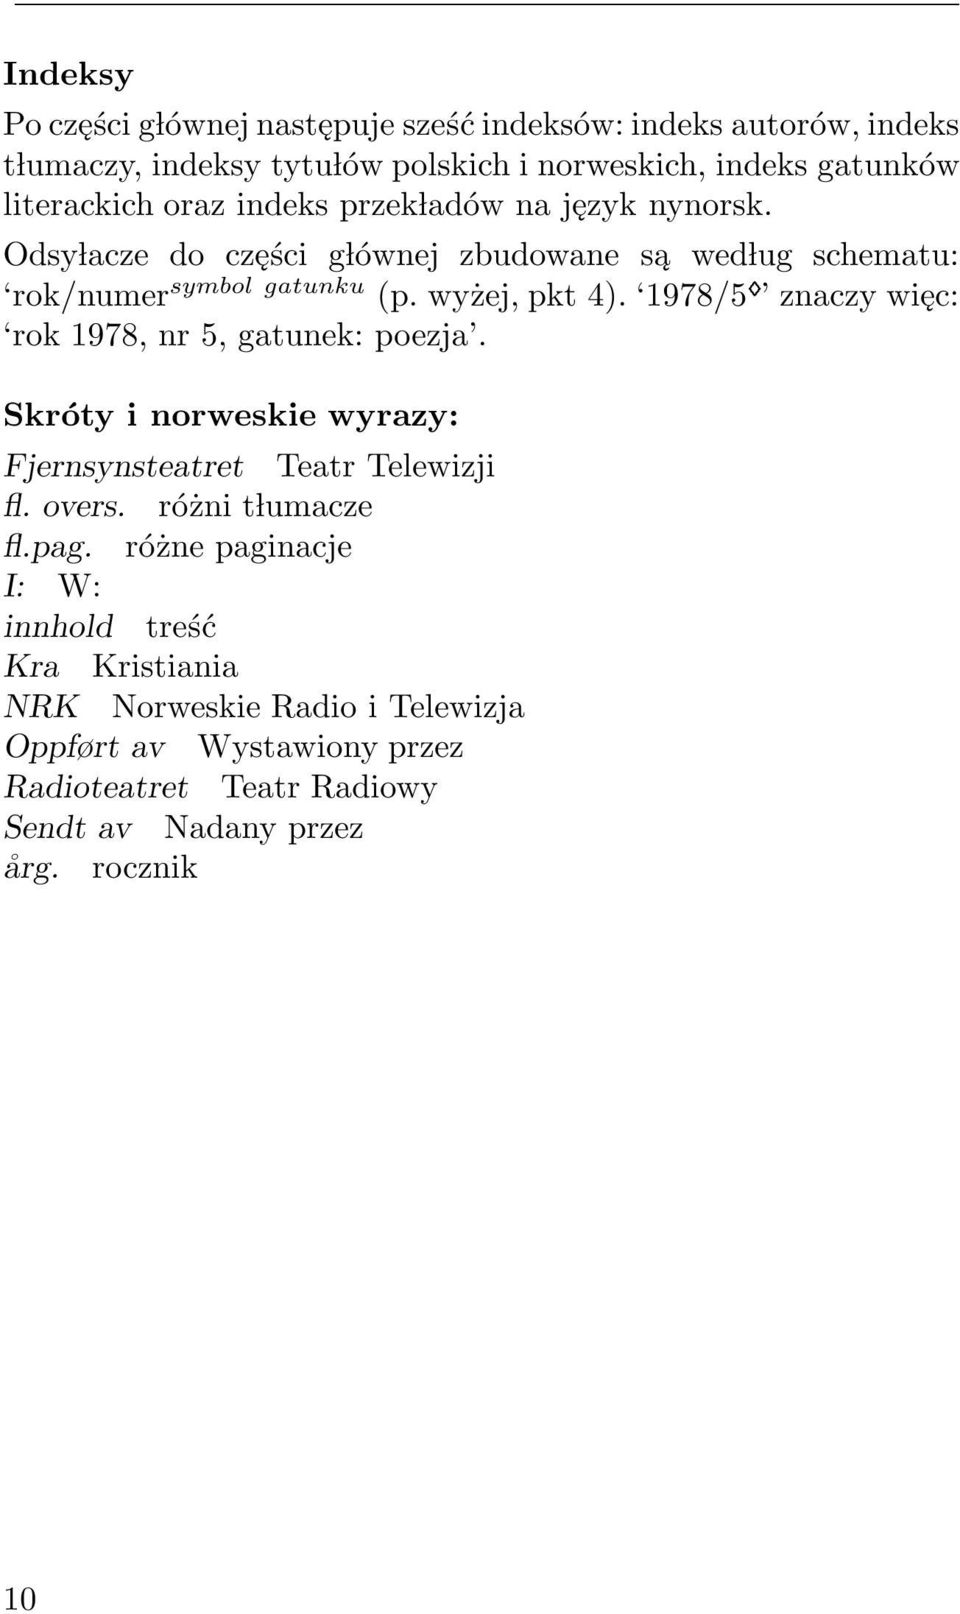 1978/5 znaczy więc: rok 1978, nr 5, gatunek: poezja. Skróty i norweskie wyrazy: Fjernsynsteatret Teatr Telewizji fl. overs. różni t lumacze fl.pag.